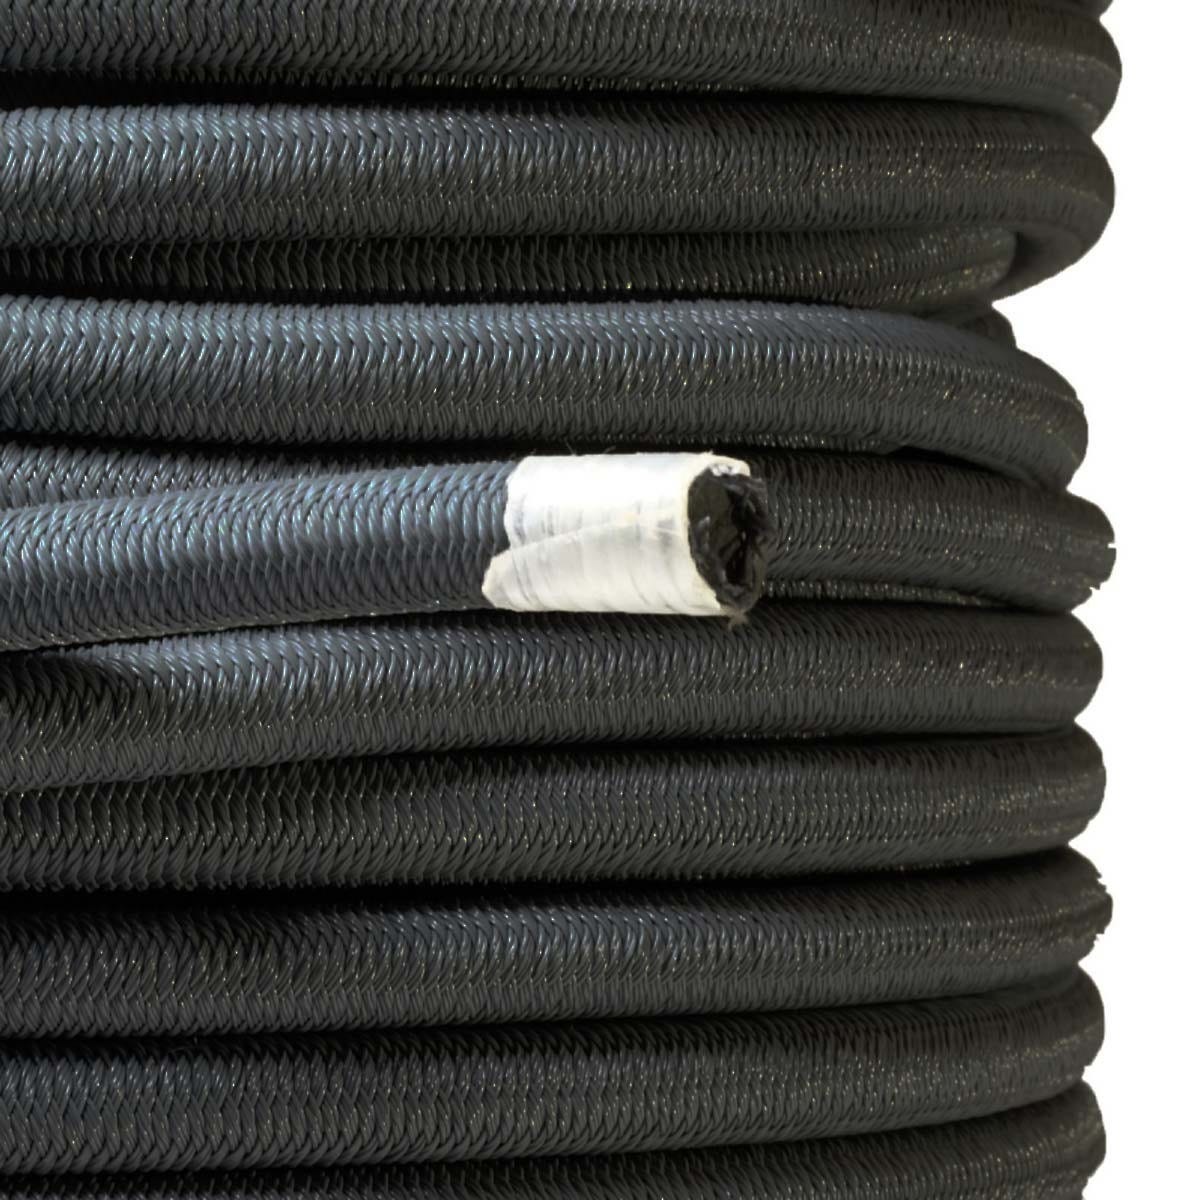 Sandow élastique Noir 30 mètres - Qualité PRO TECPLAST 9SW - Tendeur pour bâche de diamètre 9 mm 2